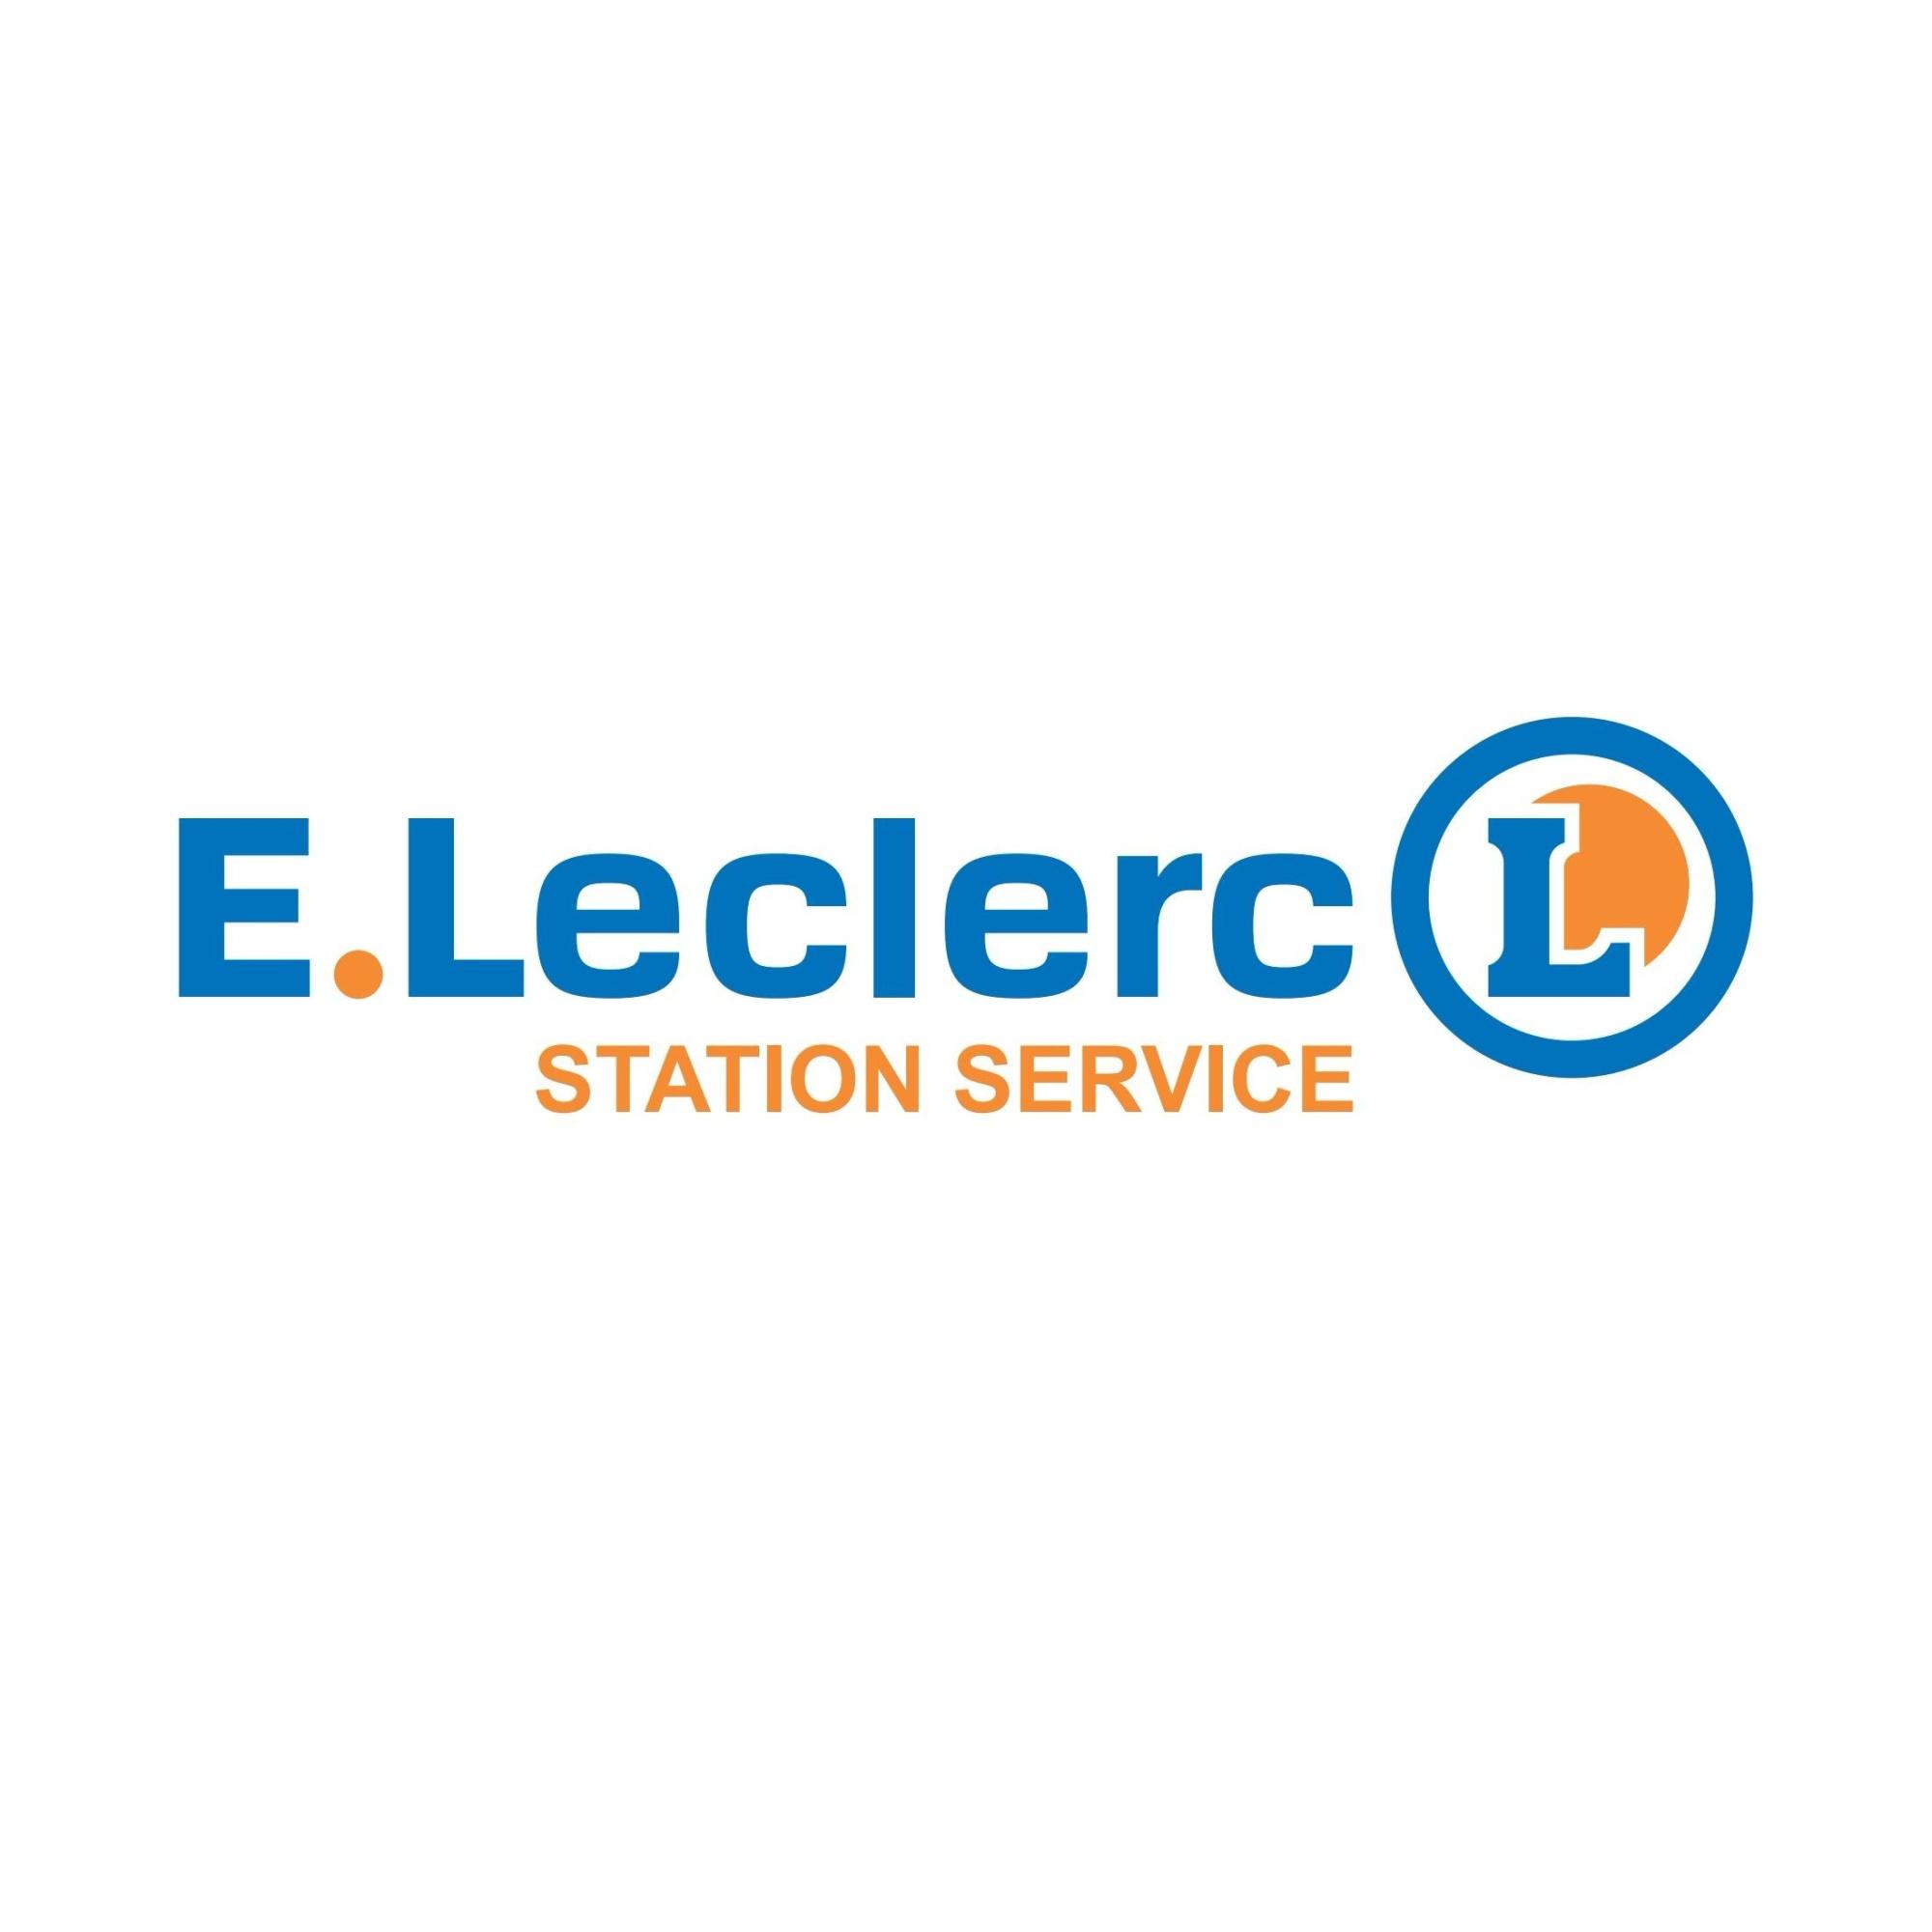 E.leclerc Station Service Coutras